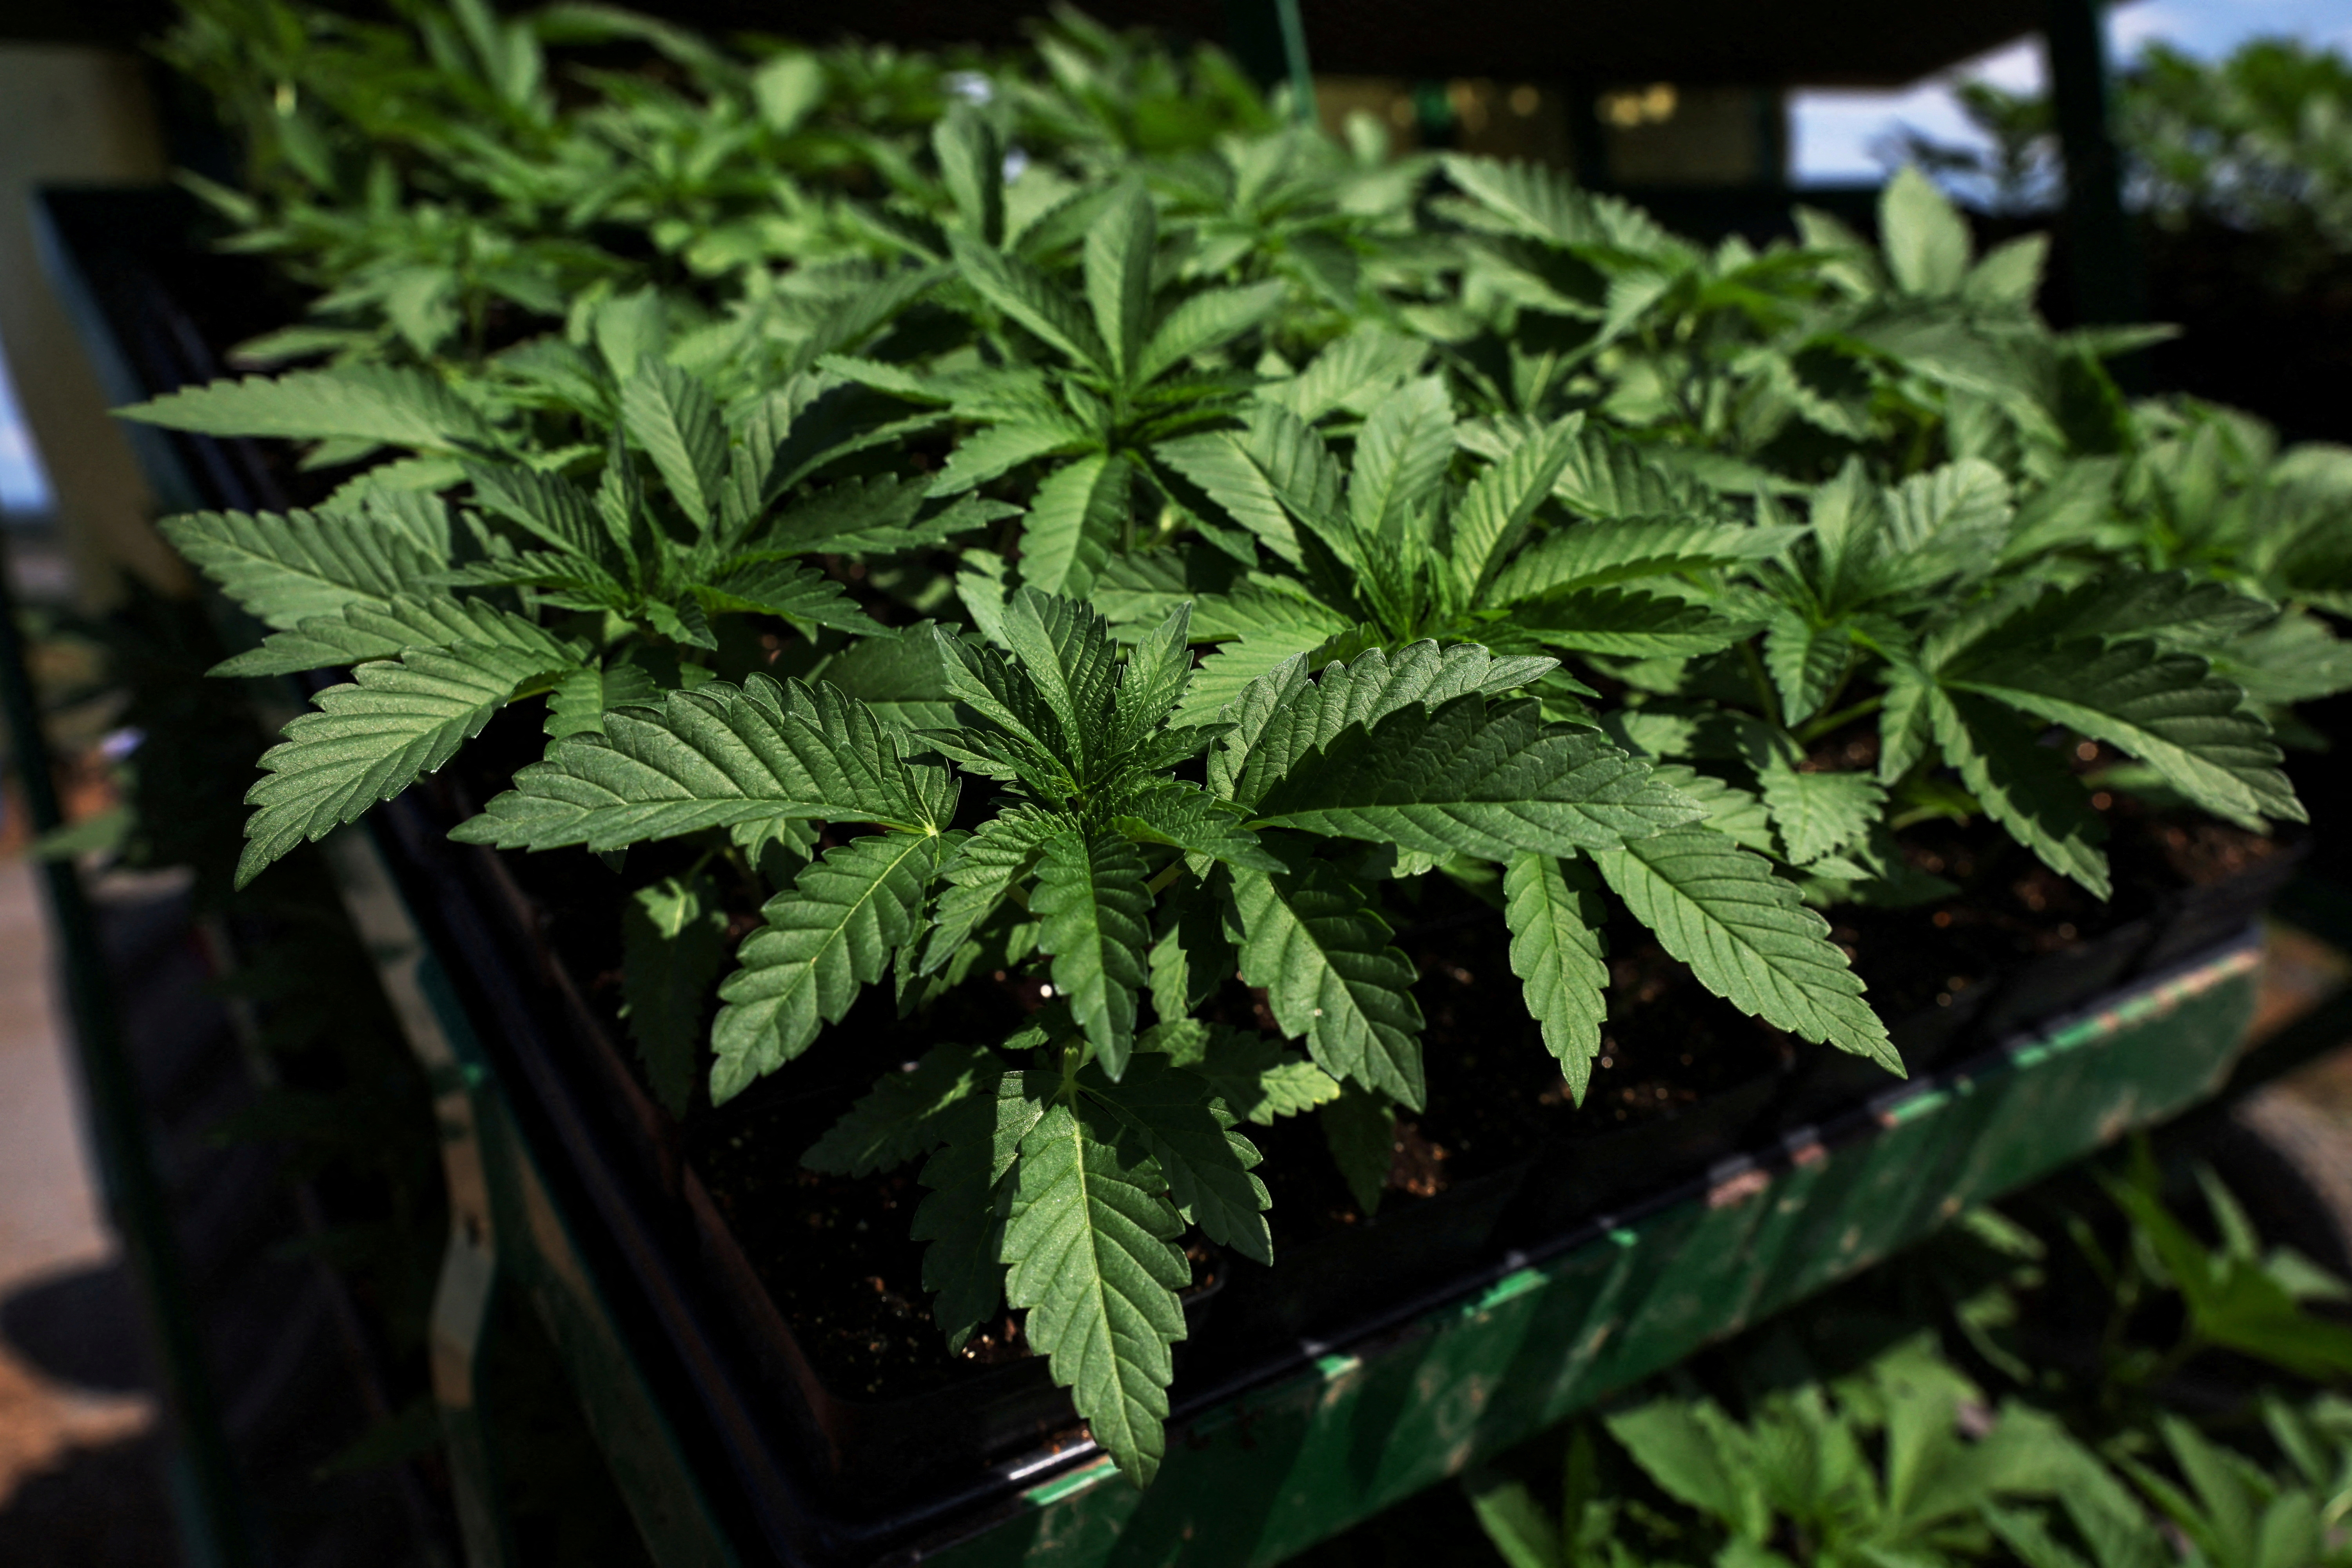 New marijuana ETF hits the block amid pot stocks rally